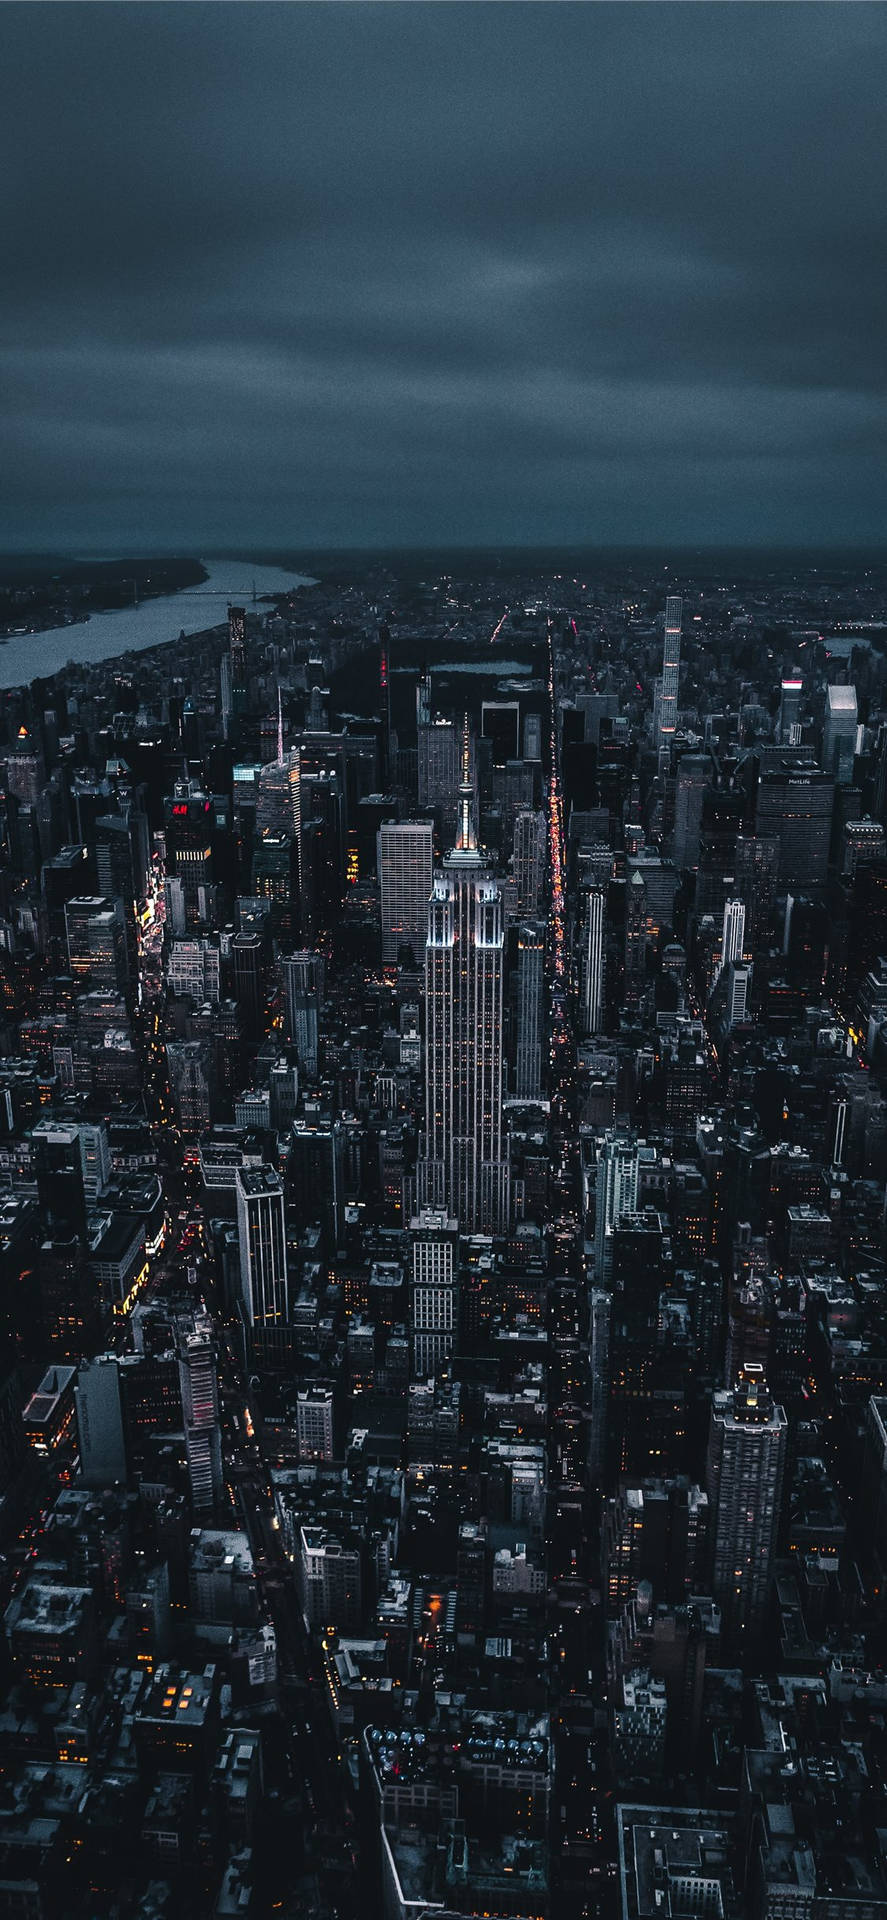 Feel the city that never sleeps - New York Wallpaper